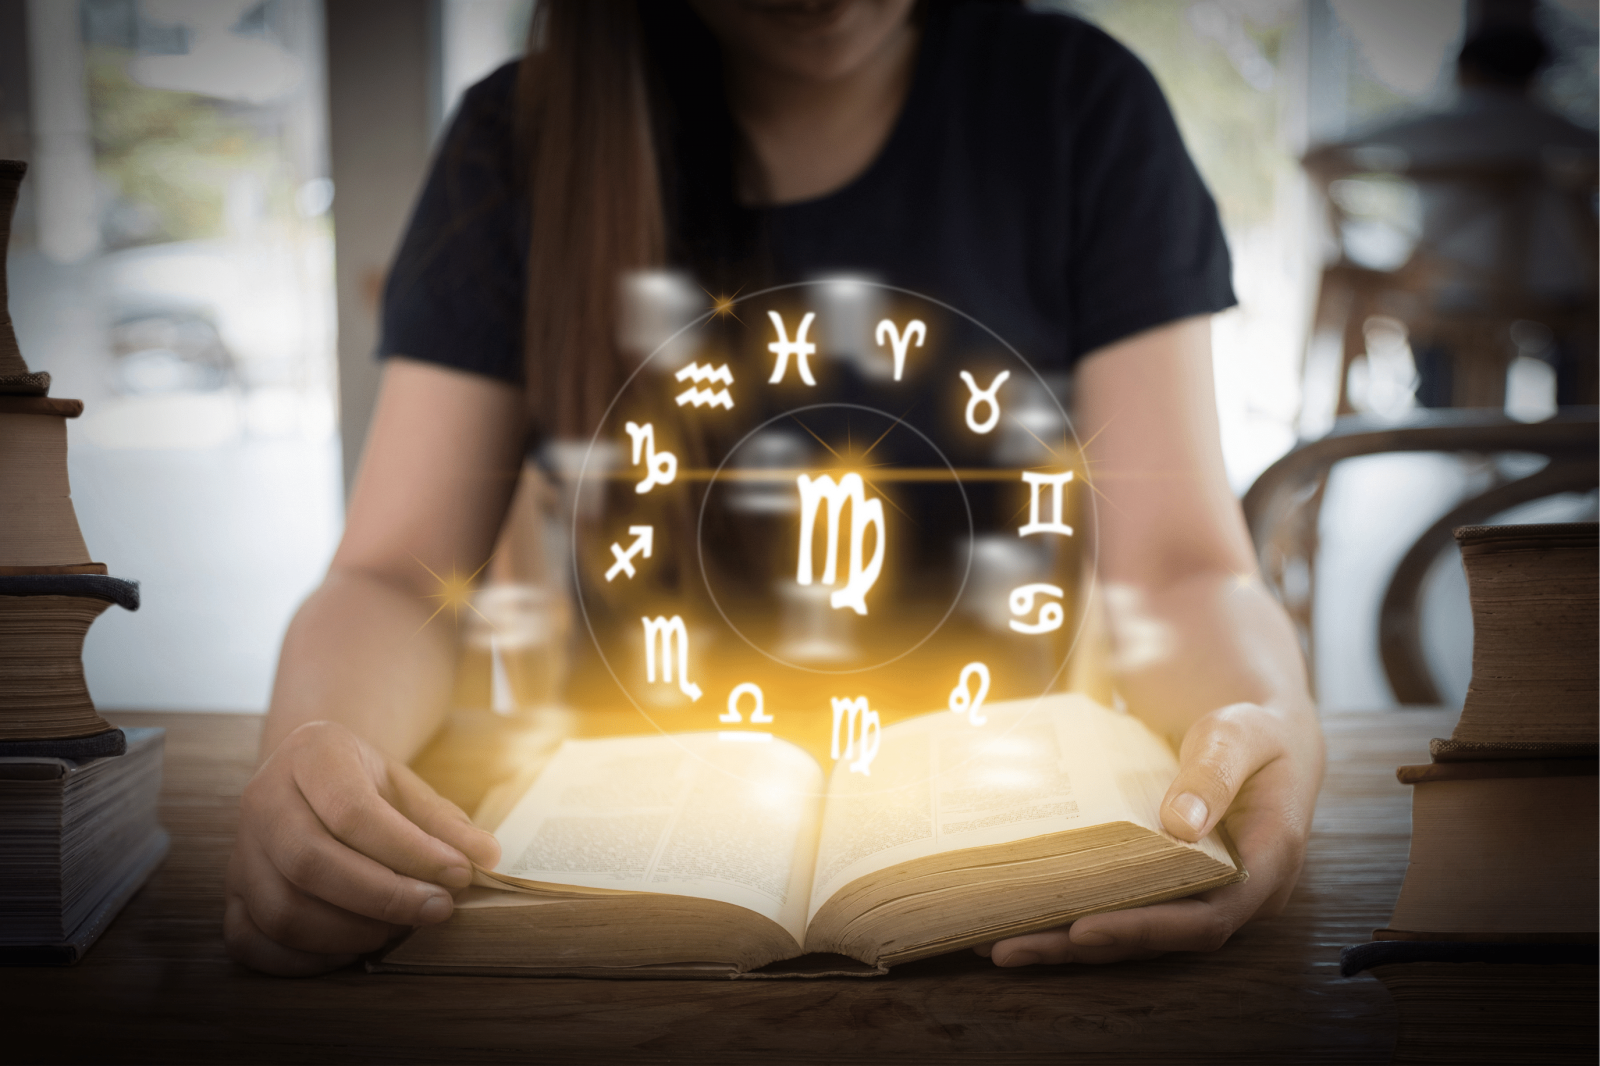 Mulher branca sentada lendo livro com símbolos do horóscopo brilhando.